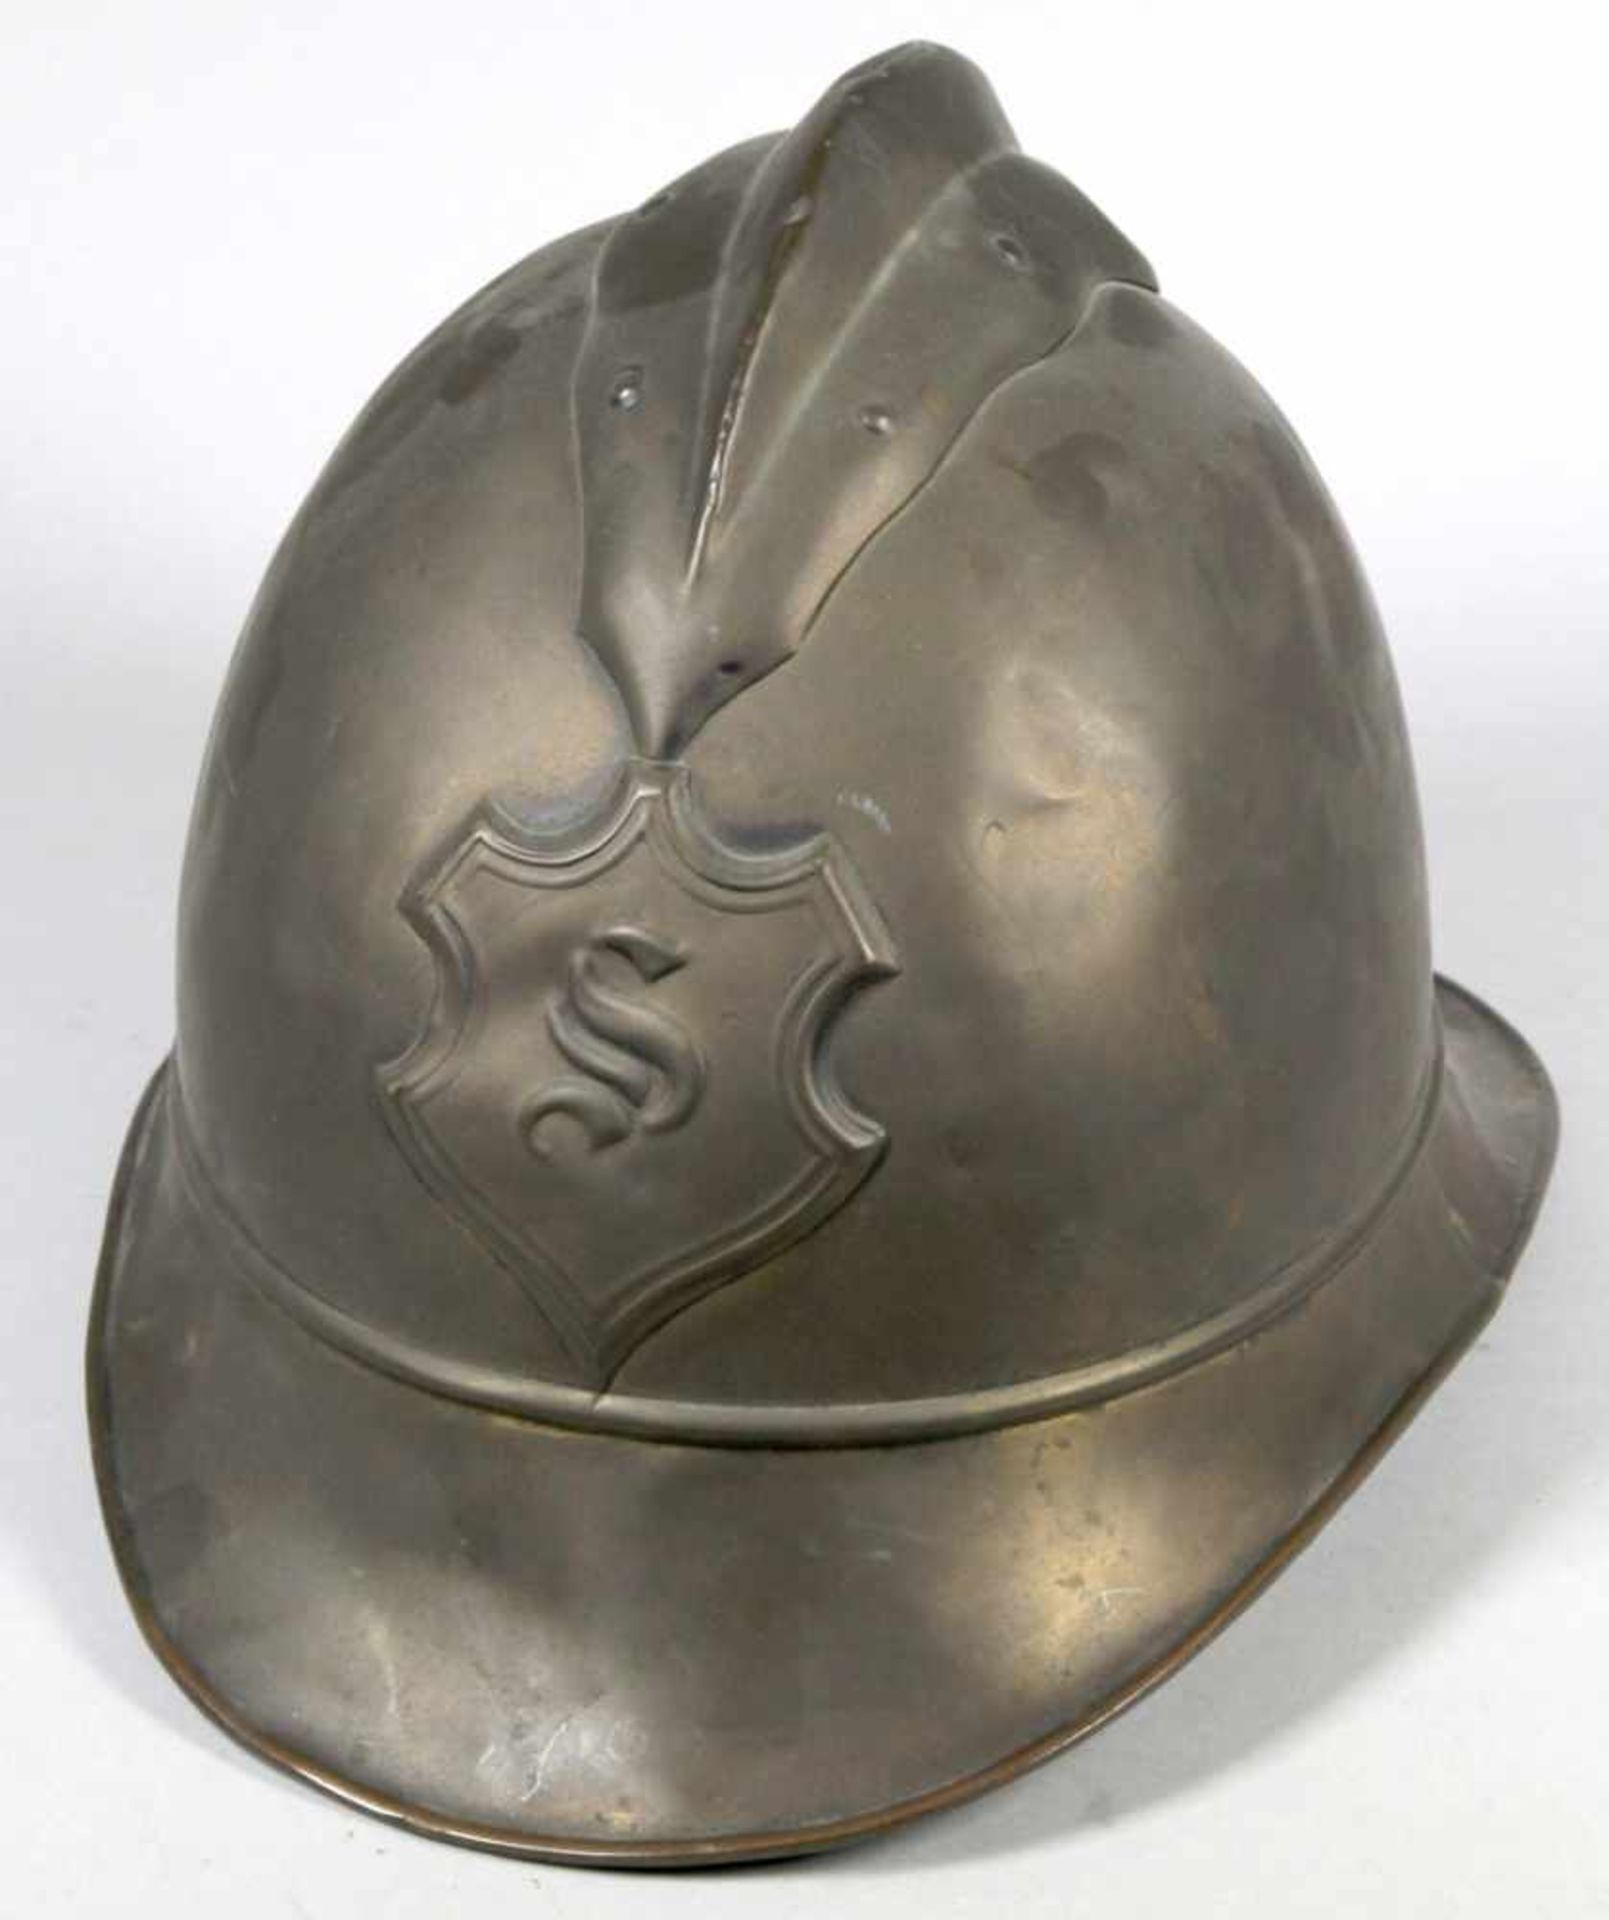 Feuerwehr-Helm, 19. Jh., Messing, H 20 cm, teilw. mit Dellen und Bruchstellen, gebrauchterZusta - Bild 2 aus 3